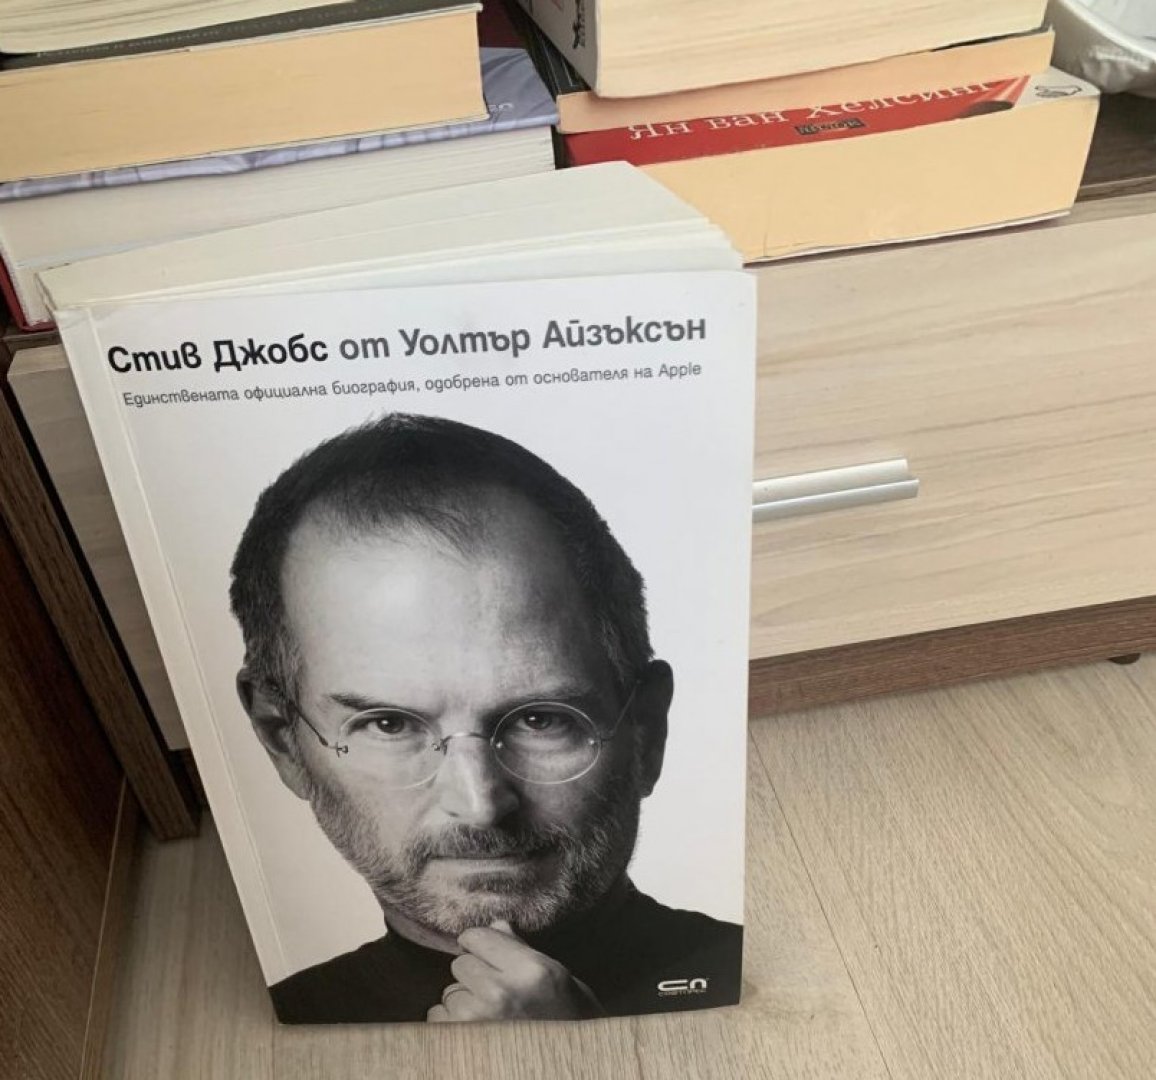 Биографията на Стив Джобс е книгата, която няколко дни не оставя Николай. Снимка Николай Георгиев